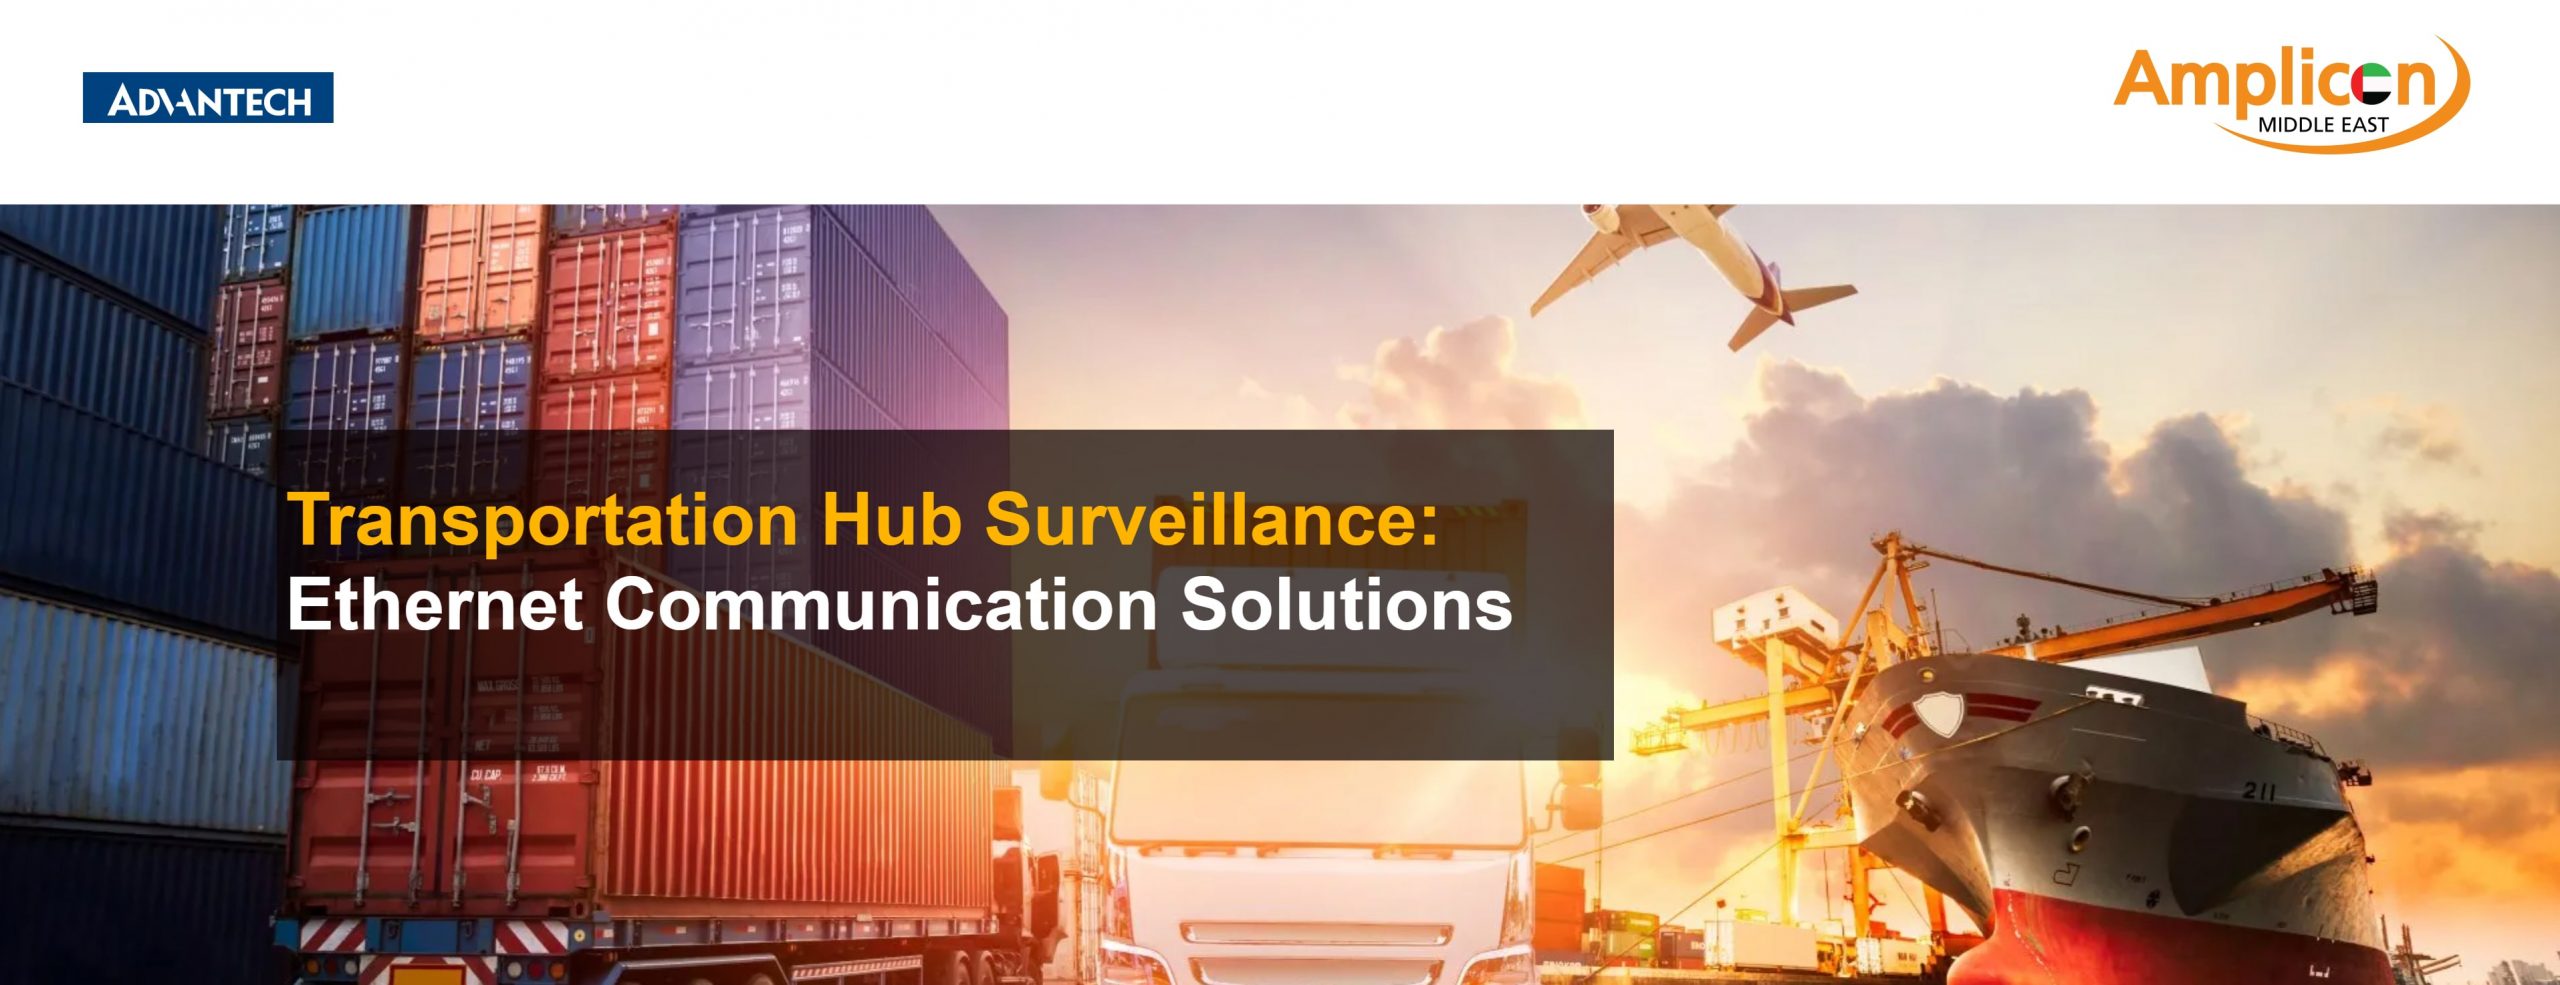 Amplicon middle east-advantech-intelligent-connectivity-en-surveillance-transportation-hub-2021-09-19-12_25_54_01-min (1)